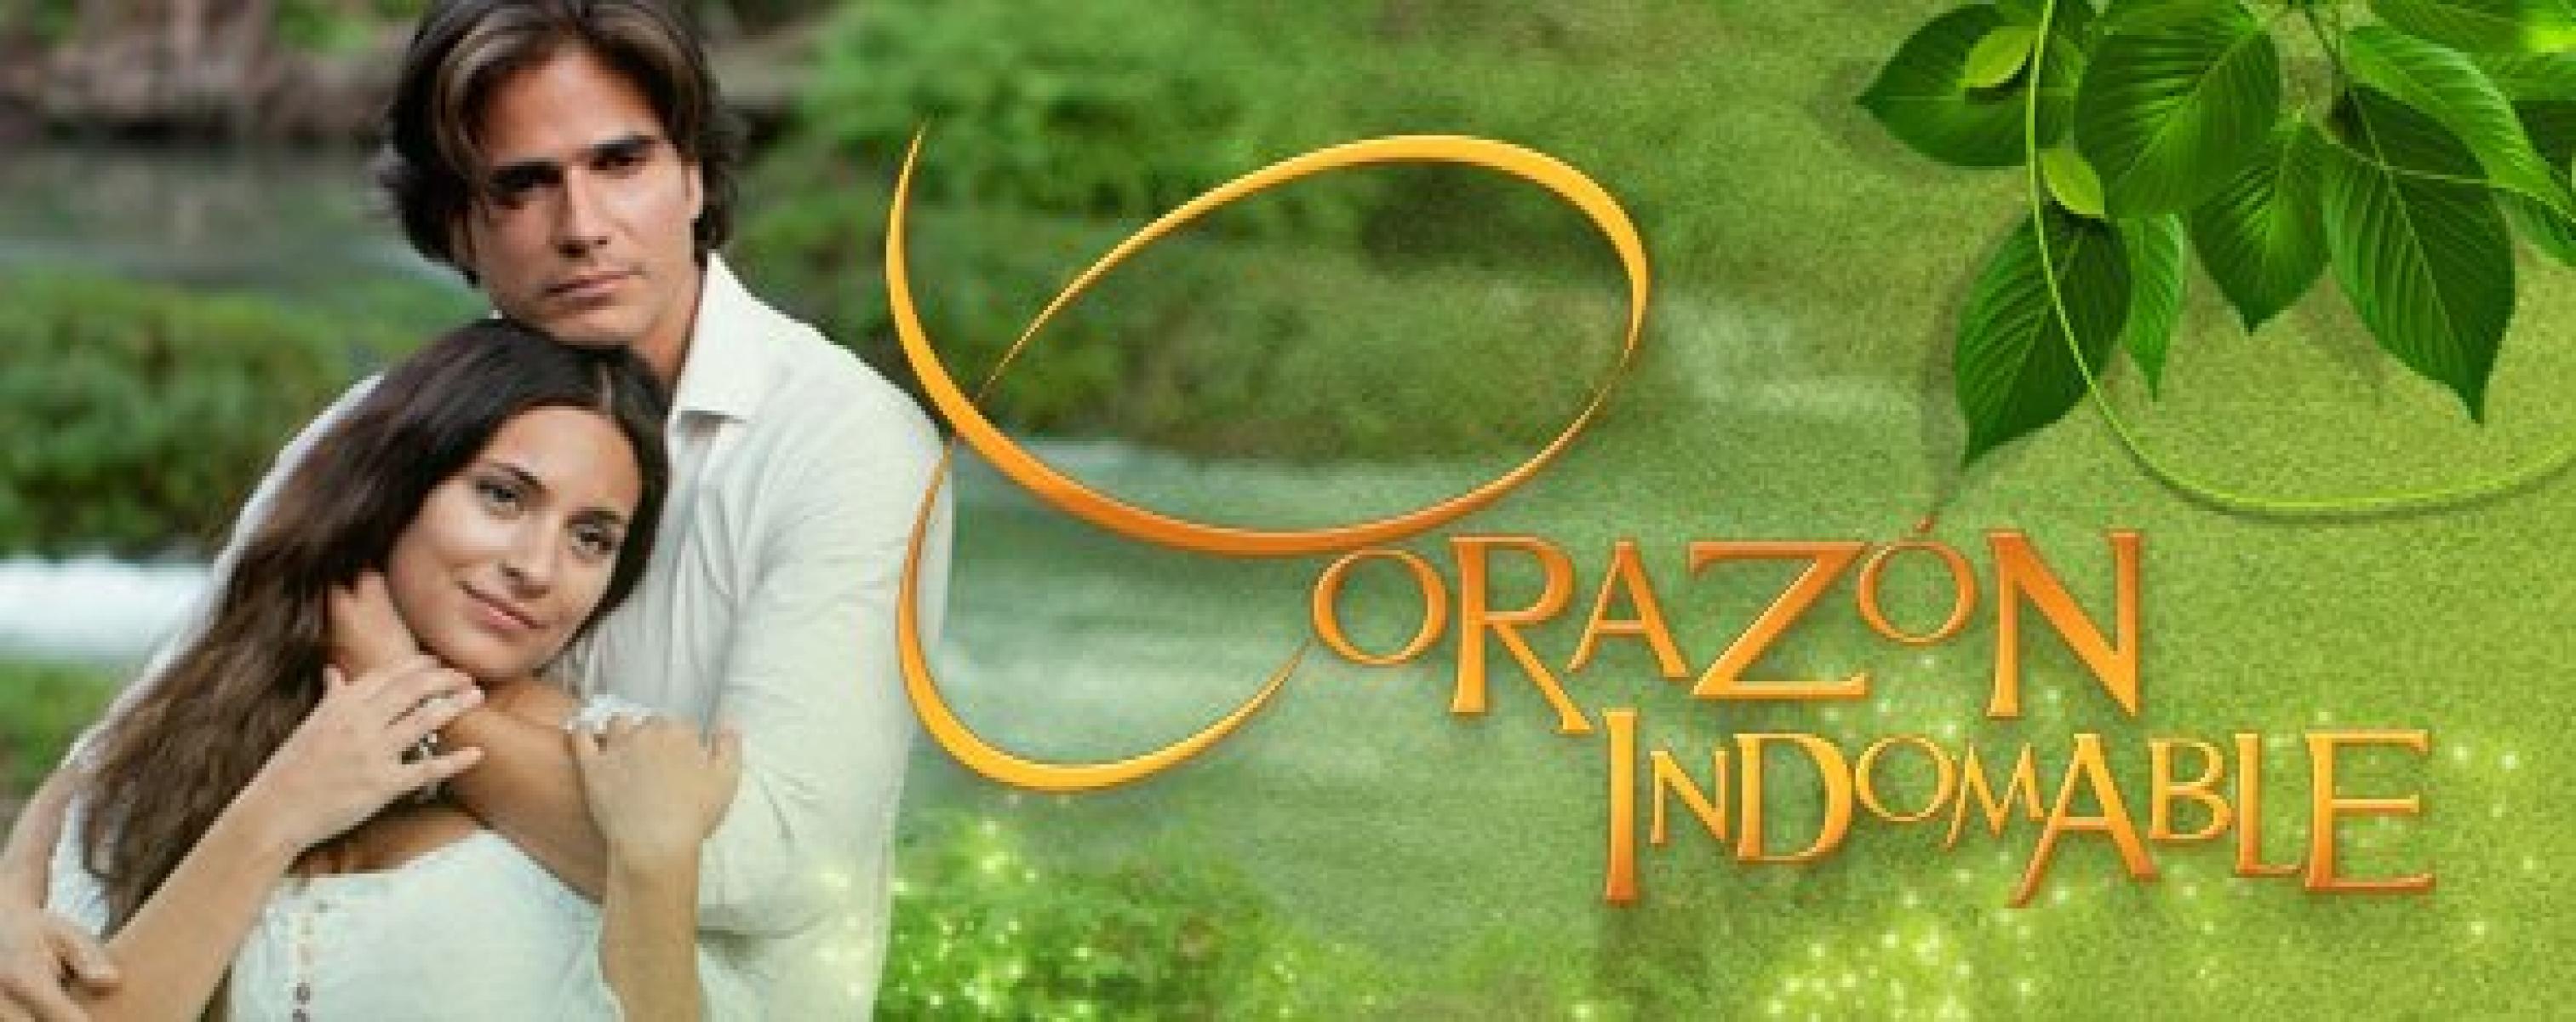 עצומה - Corazon Indomable - לב בלתי נשלט